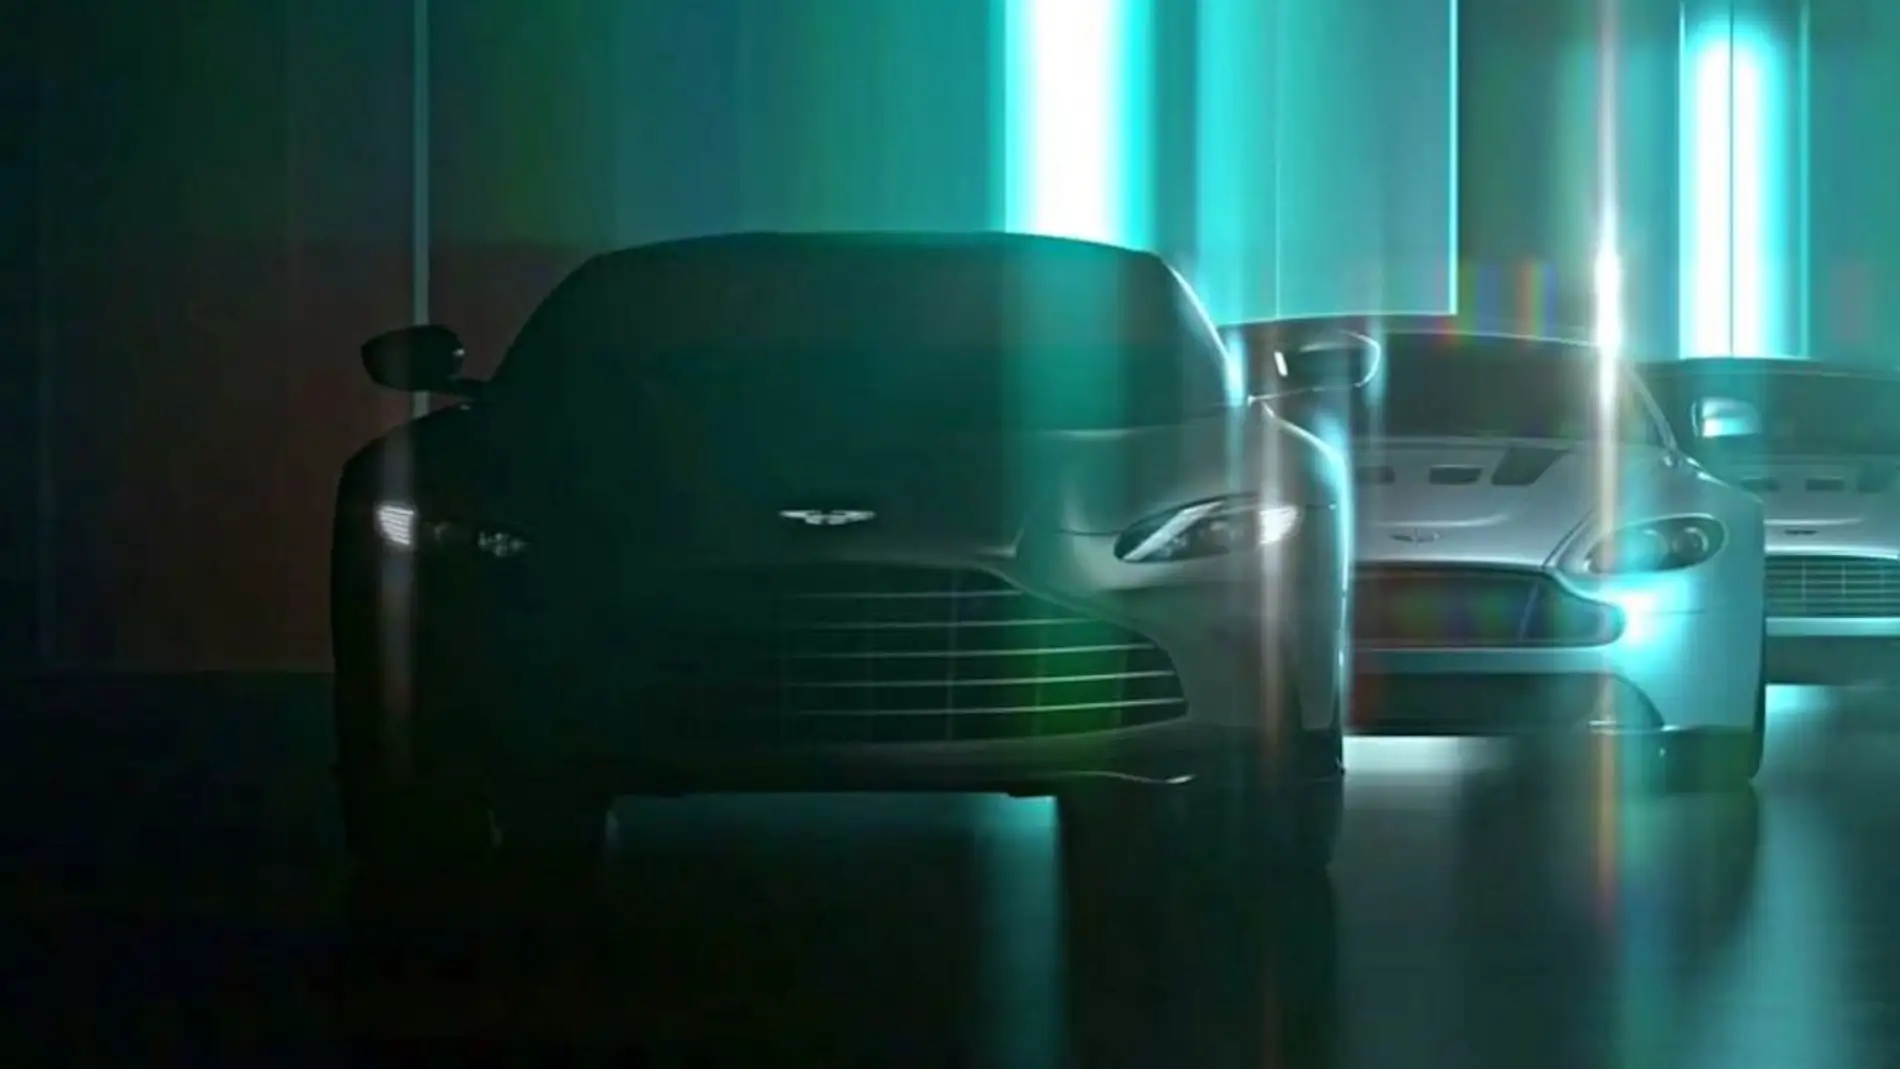 El V12 vuelve al Vantage, y Aston Martin ya lo ha hecho rugir en este vídeo